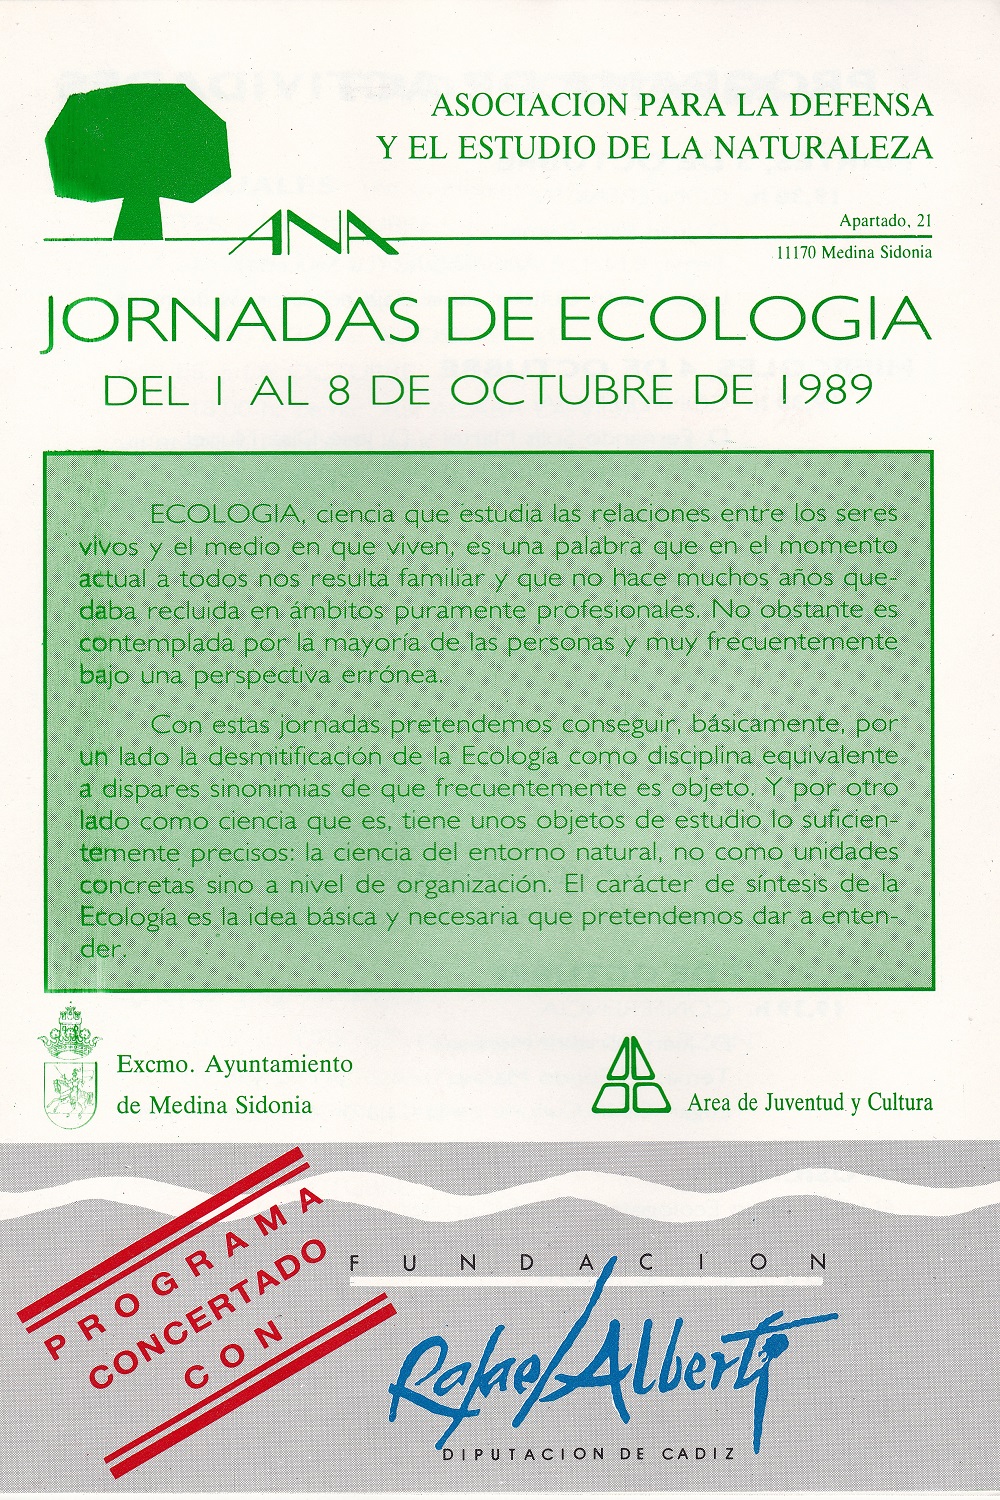 1989 Jornadas de Ecologia 1